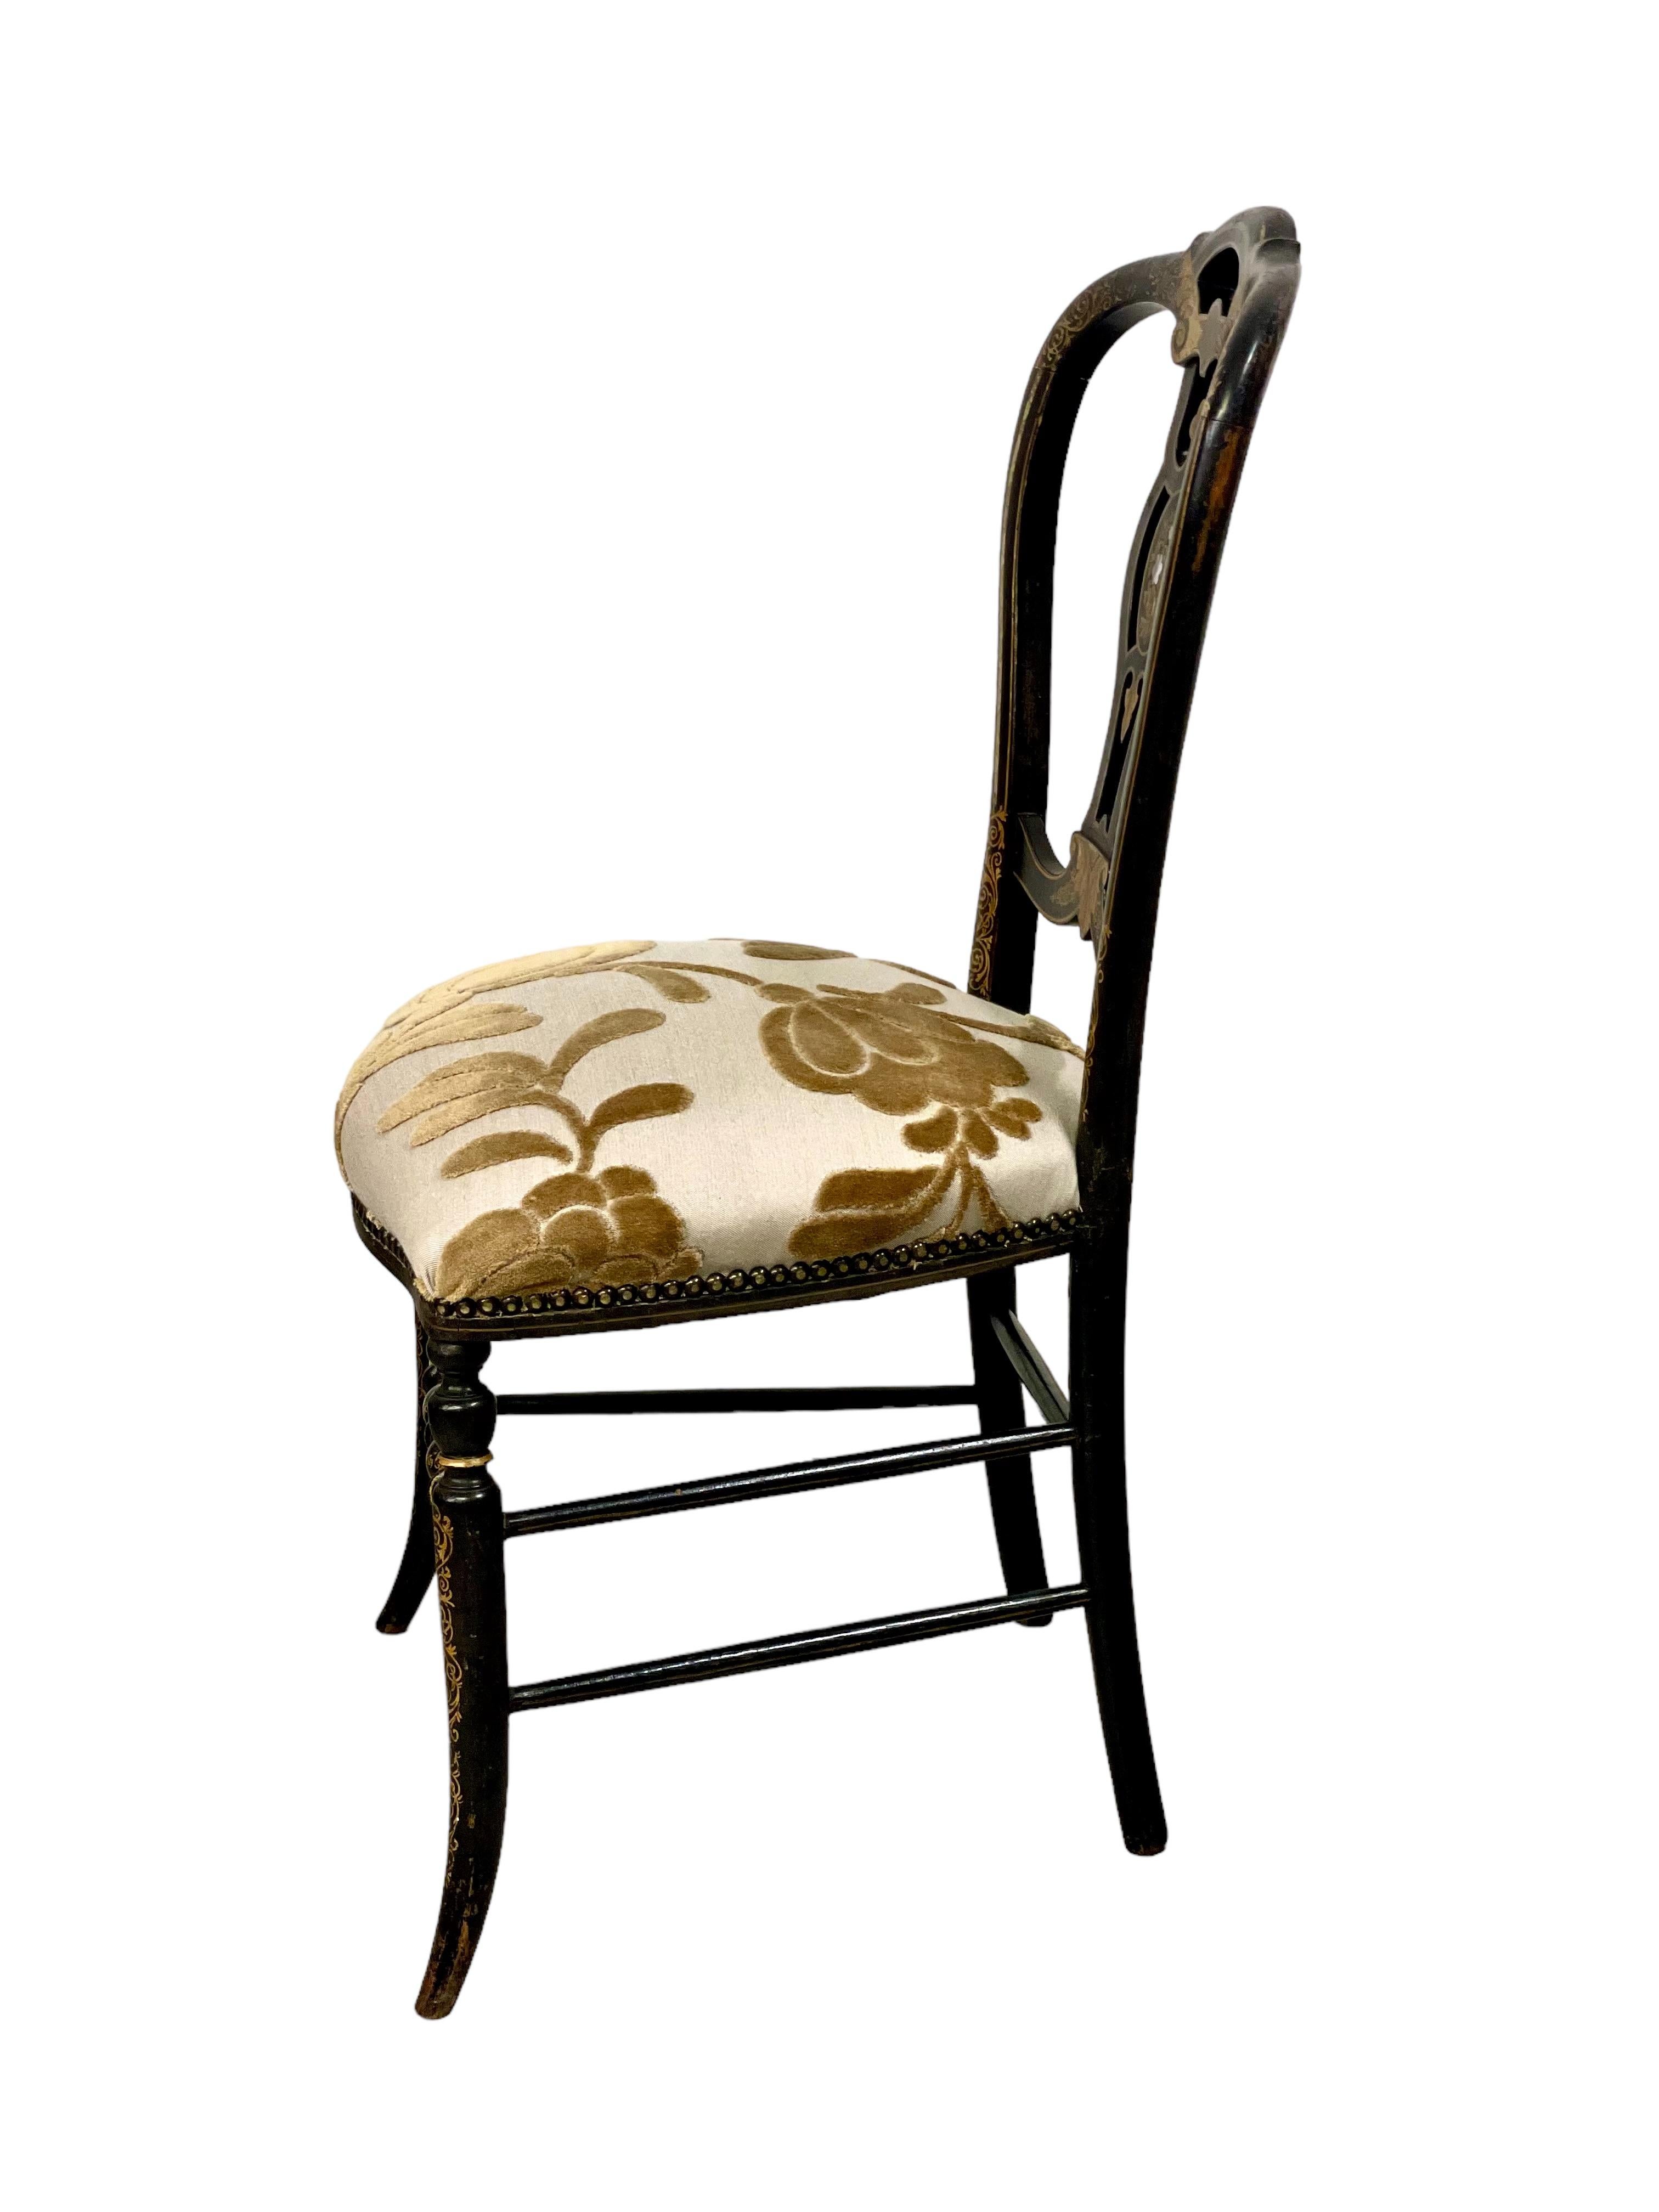 Élégante chaise chauffeuse décorative du XIXe siècle, d'époque Napoléon III, dont le profond et confortable coussin d'assise est magnifiquement tapissé d'un remarquable tissu crème et bronze, fixé sur tout le pourtour par une garniture de têtes de